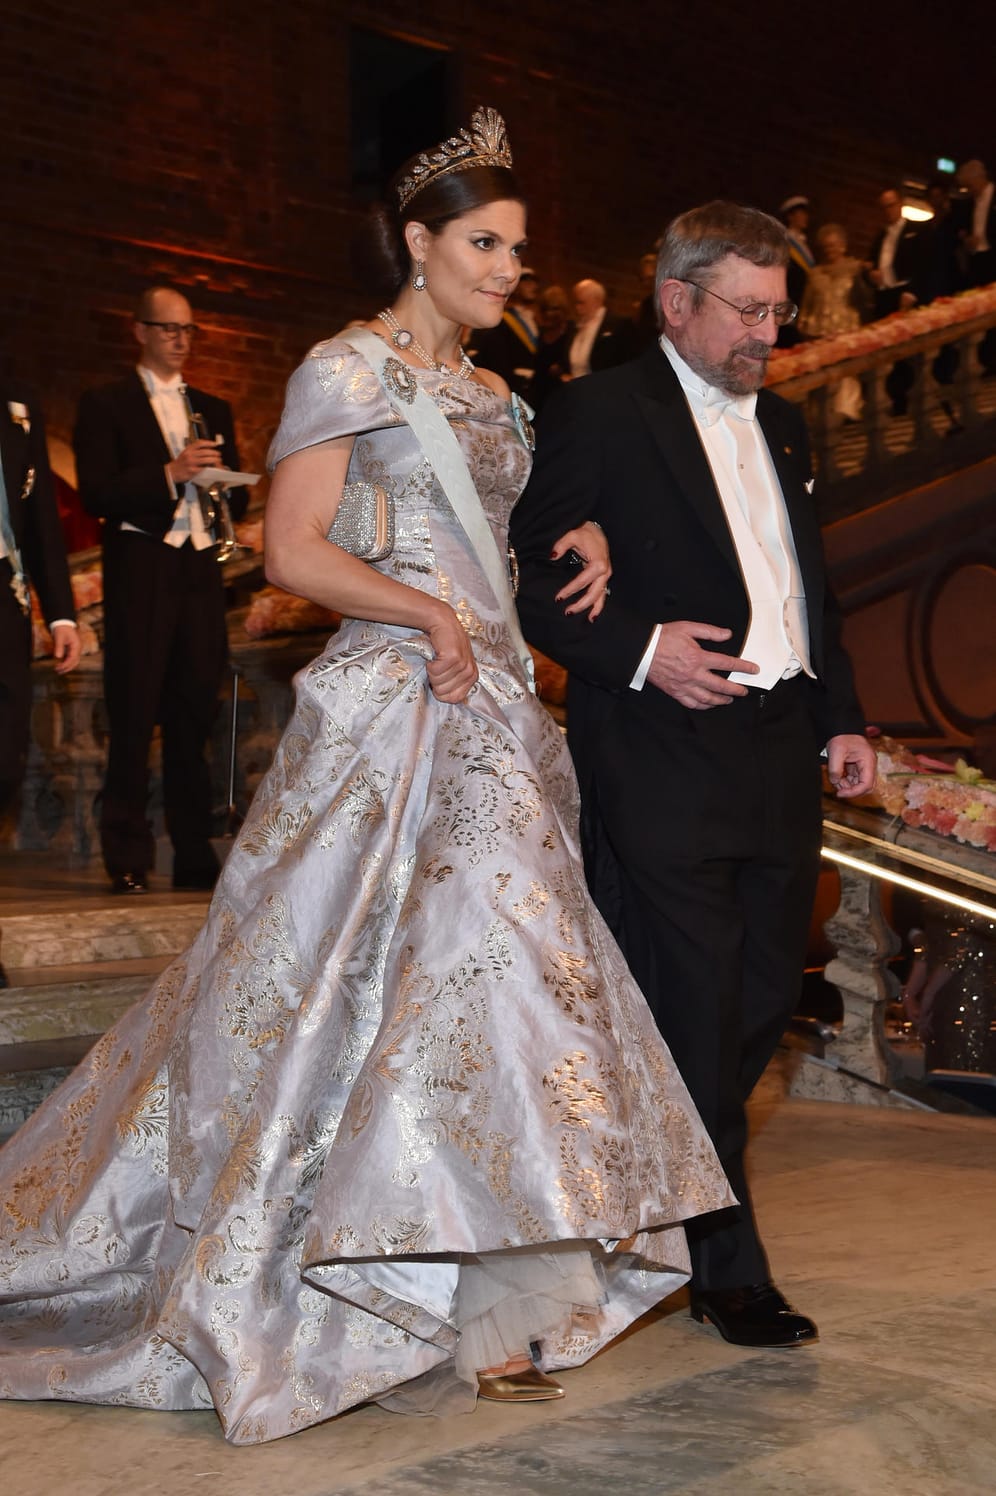 10. Dezember 2016: Auch zum Nobelpreis-Bankett kam Victoria schon mal zu einer eleganten Ballrobe von H&M.